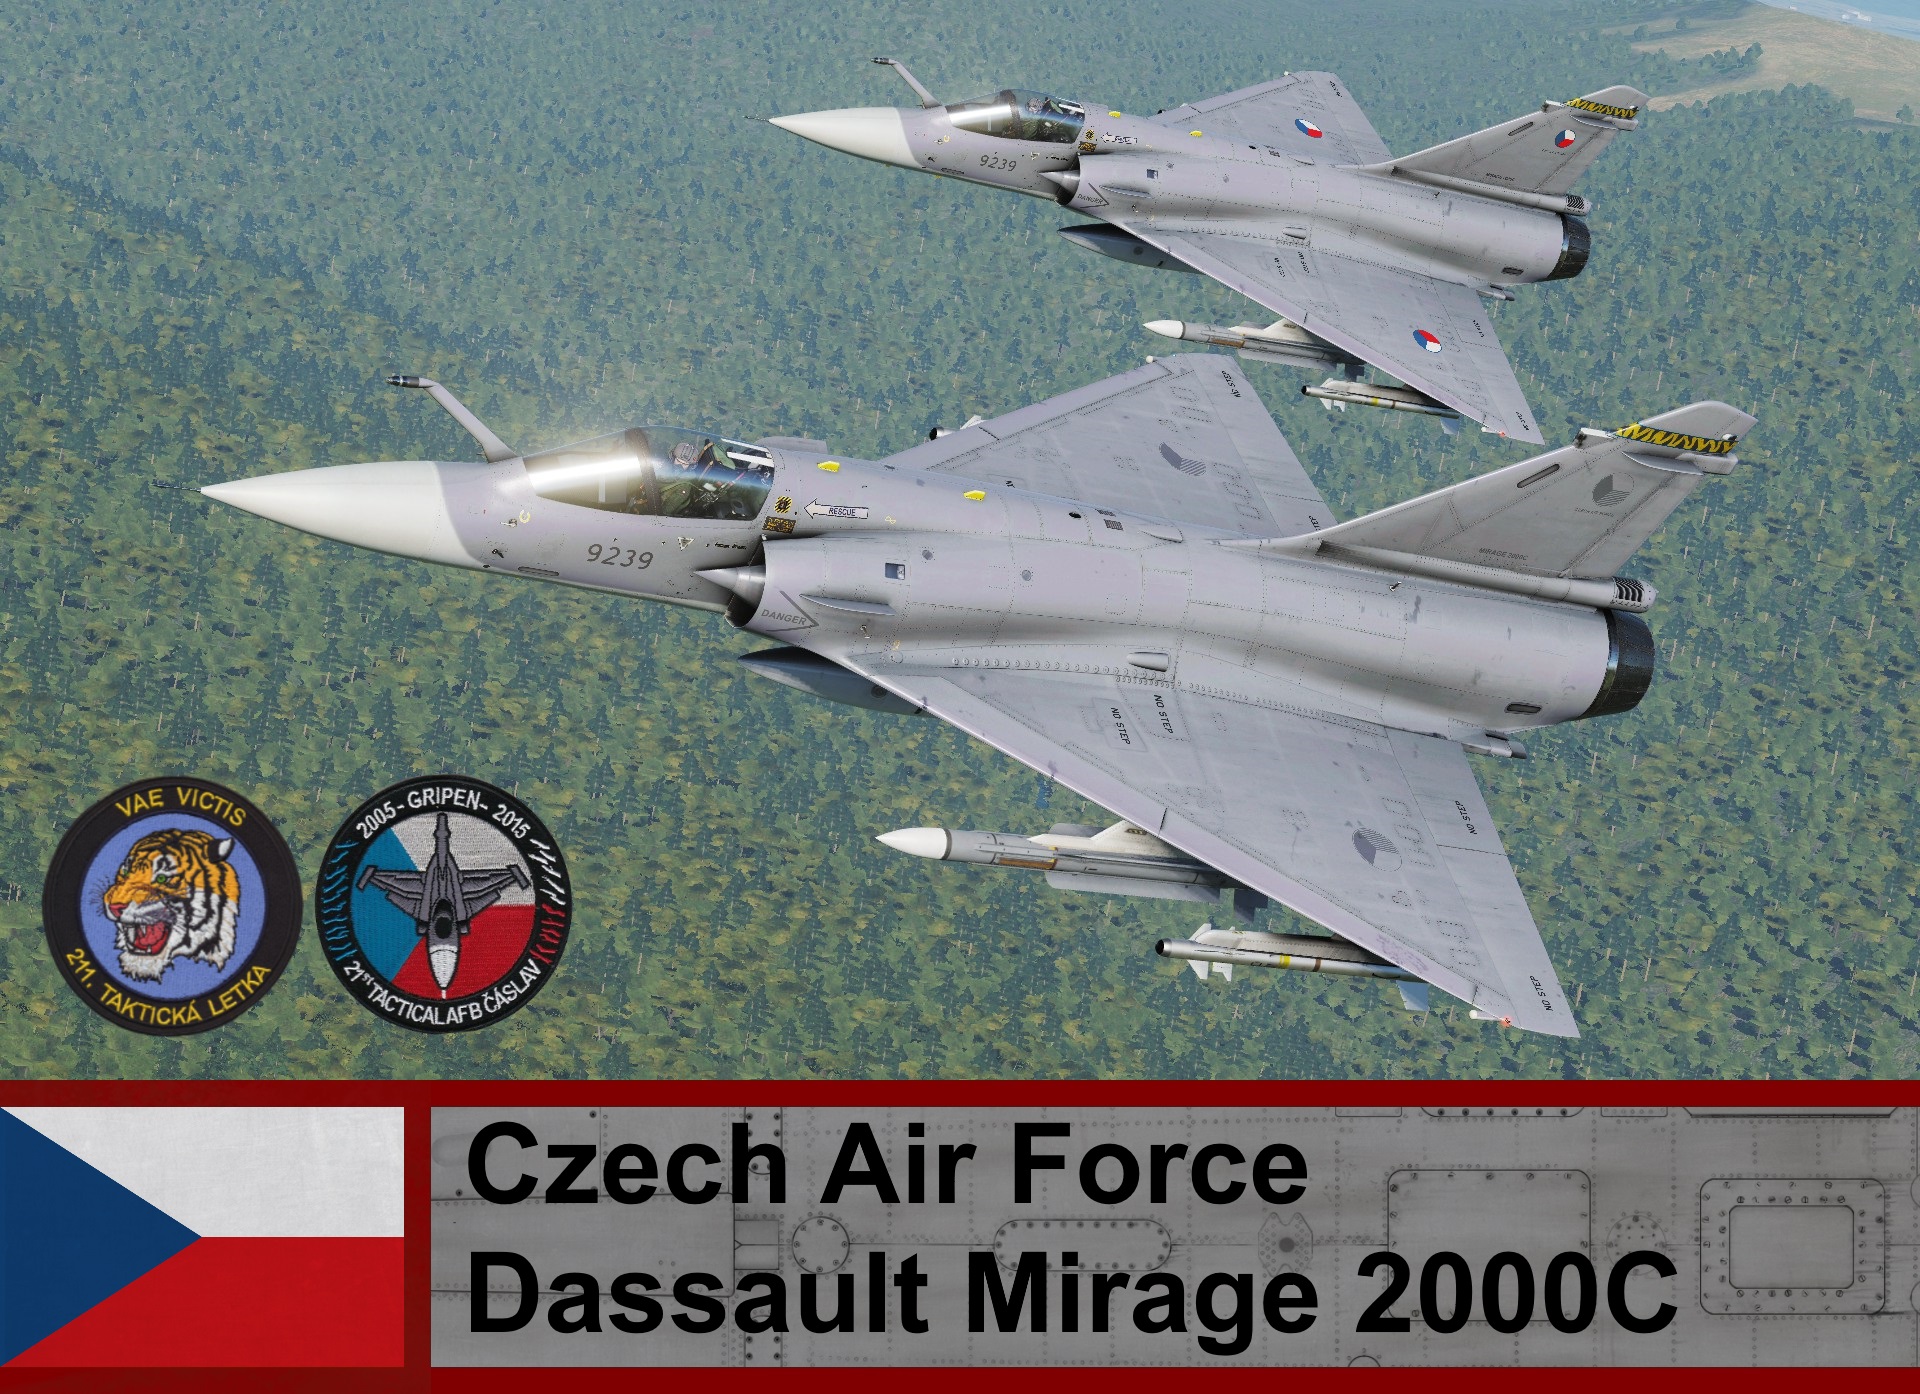 Czech Air Force Mirage-2000C / 211 Squadron (Fictional)